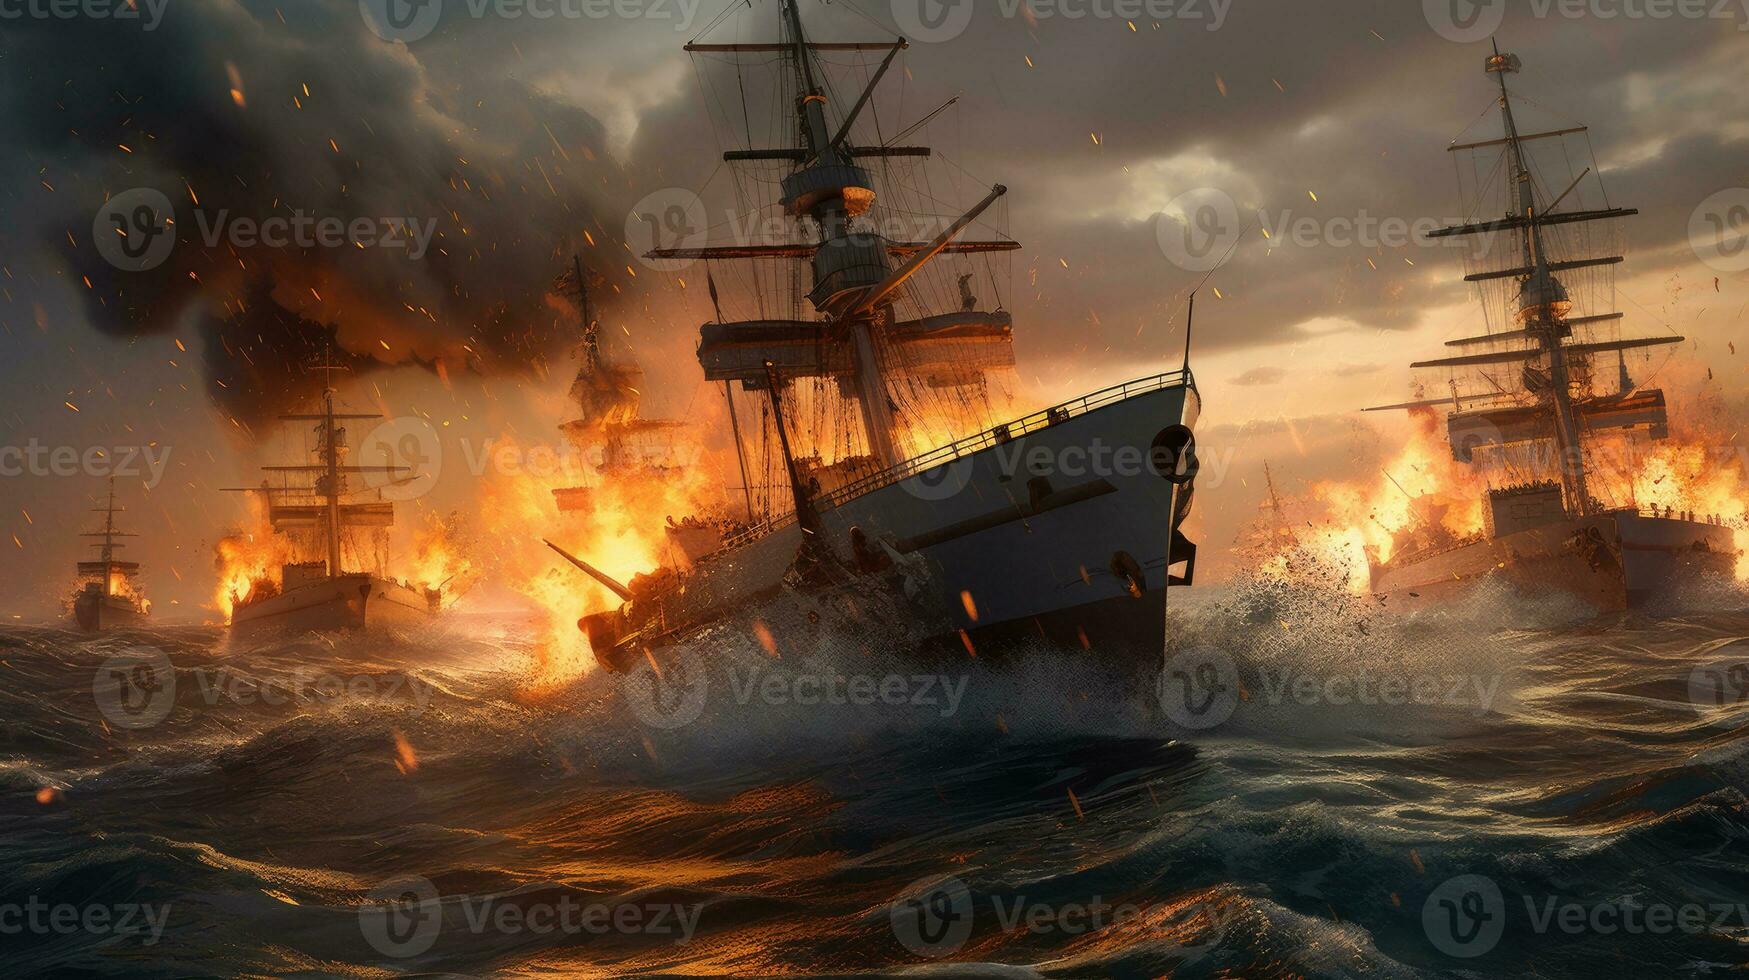 un militar imagen de un naval batalla, dos buques de guerra intercambiando fuego en el abierto mar, olas estrellarse en contra el cascos, oscuro nubes en el horizonte, destacando el caos y destrucción foto